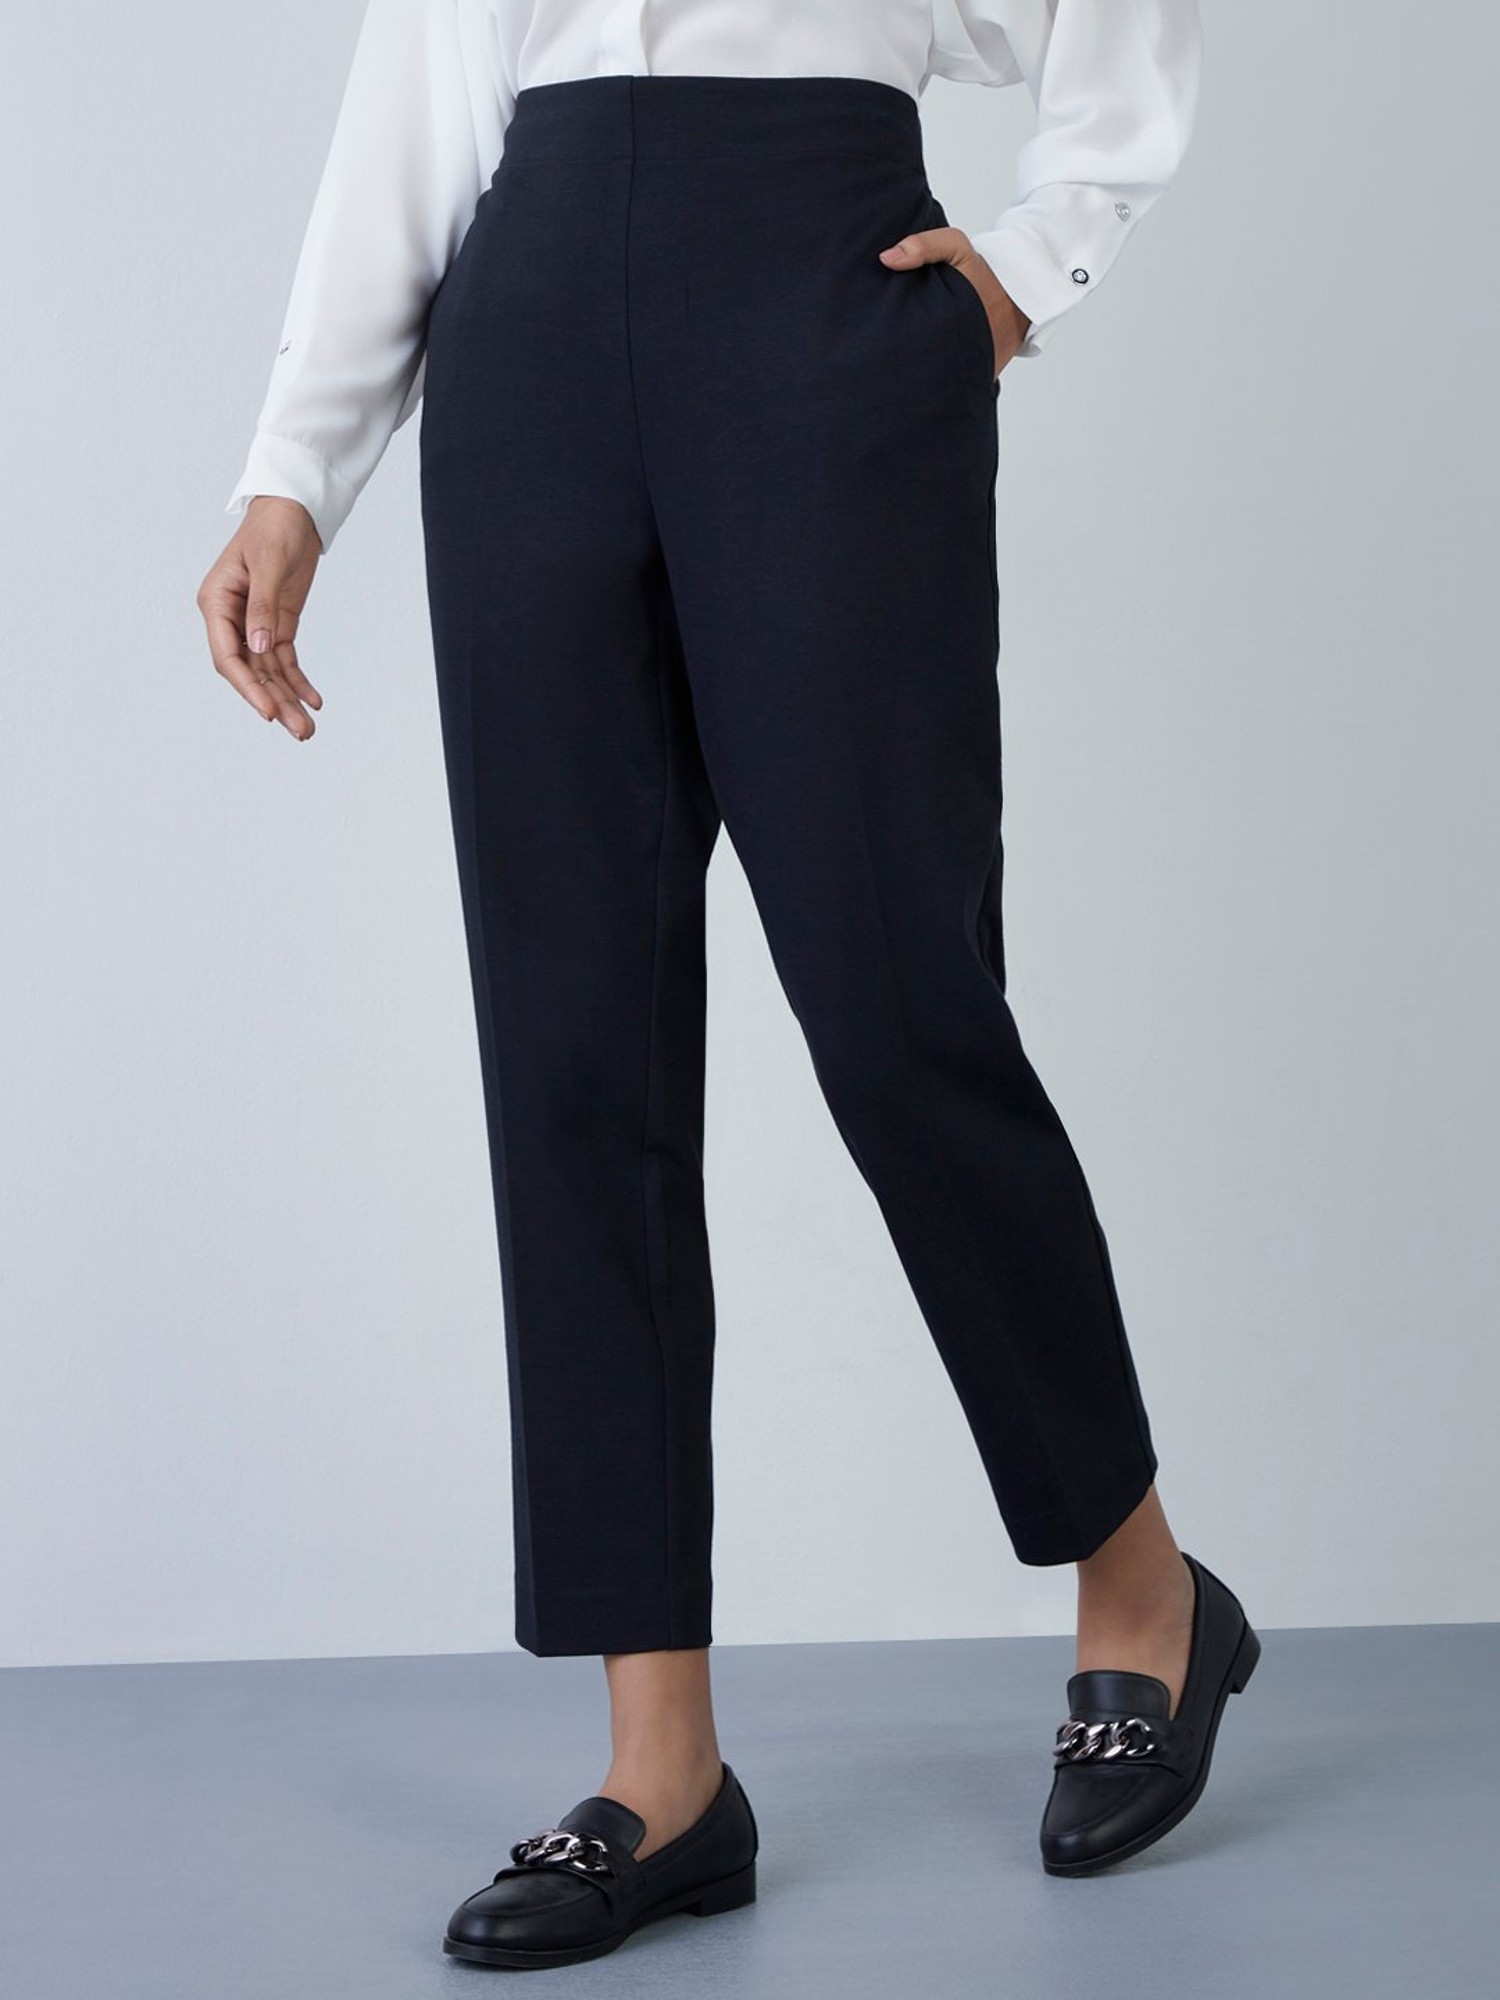 Buy Women Black Solid Casual Slim Fit Trousers Online  856256  Van Heusen